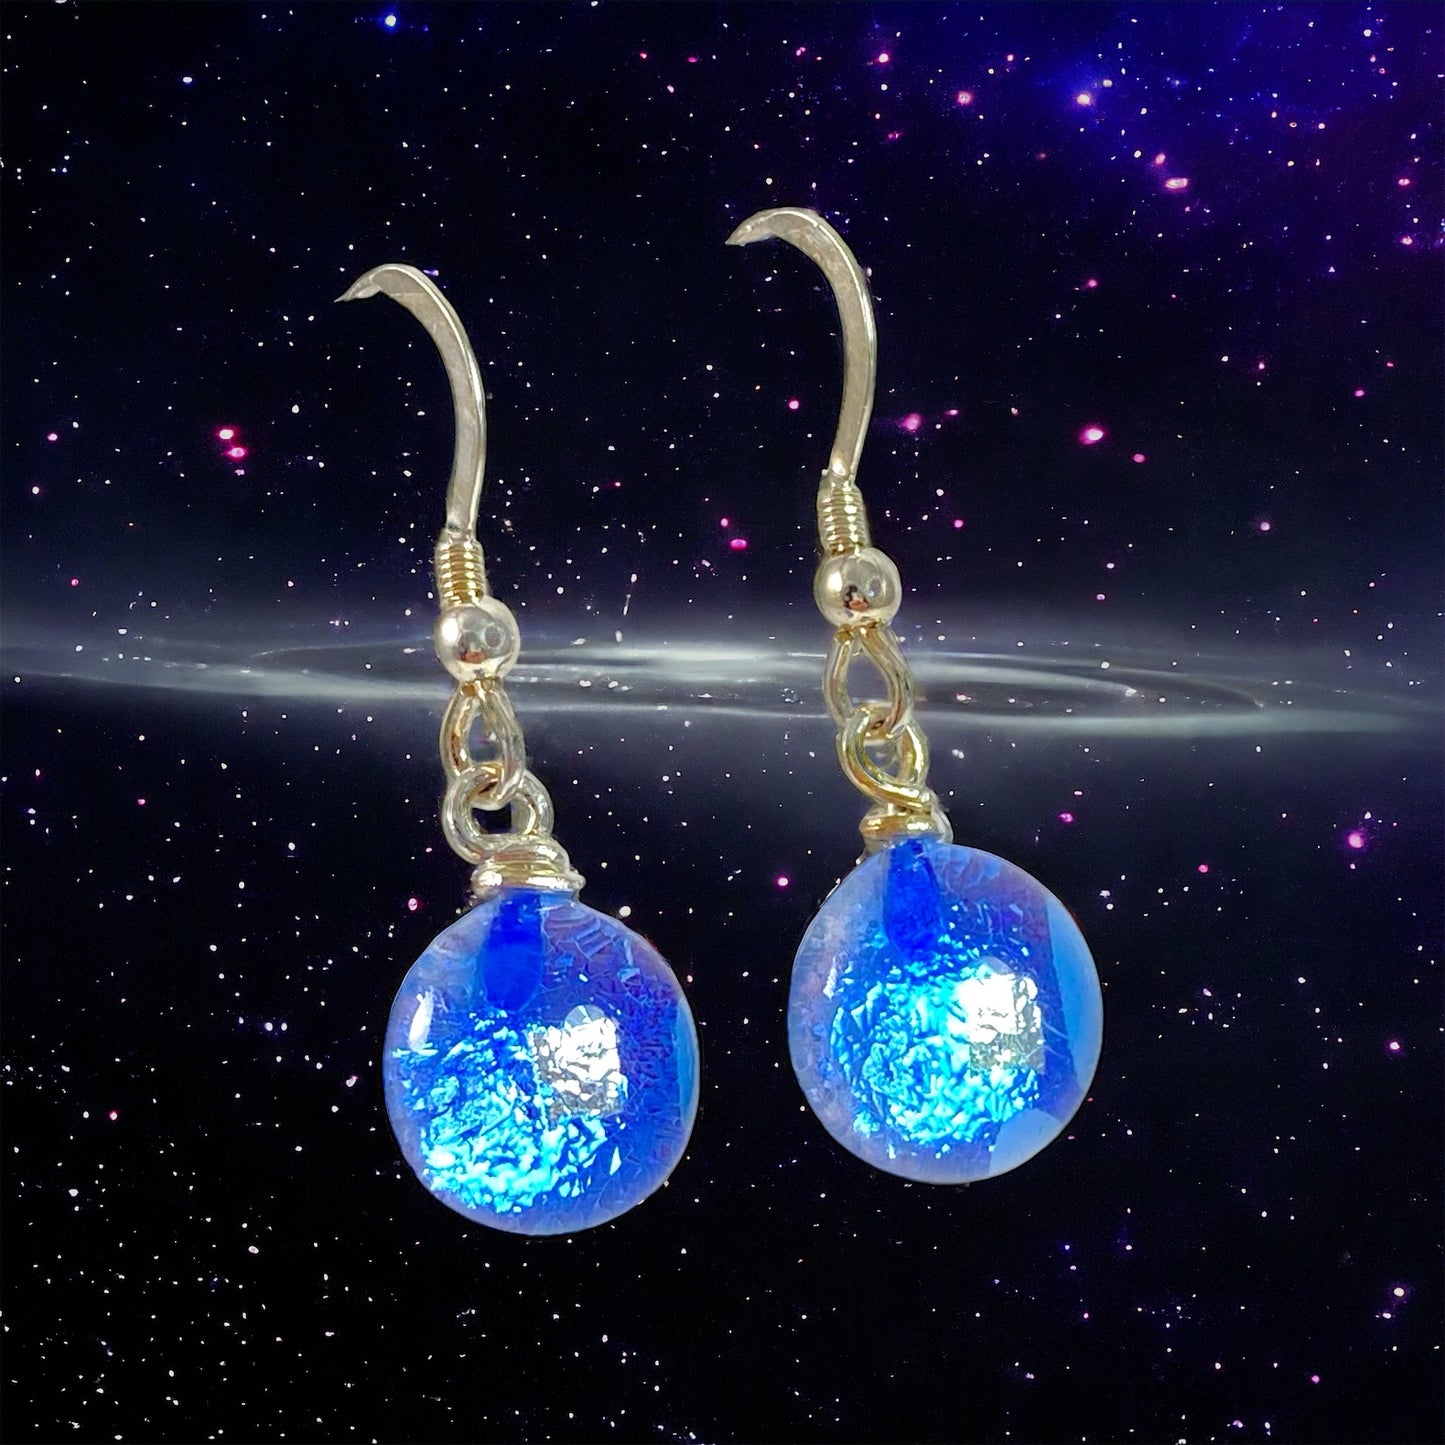 Space Ball Earrings in Sapphire Blue